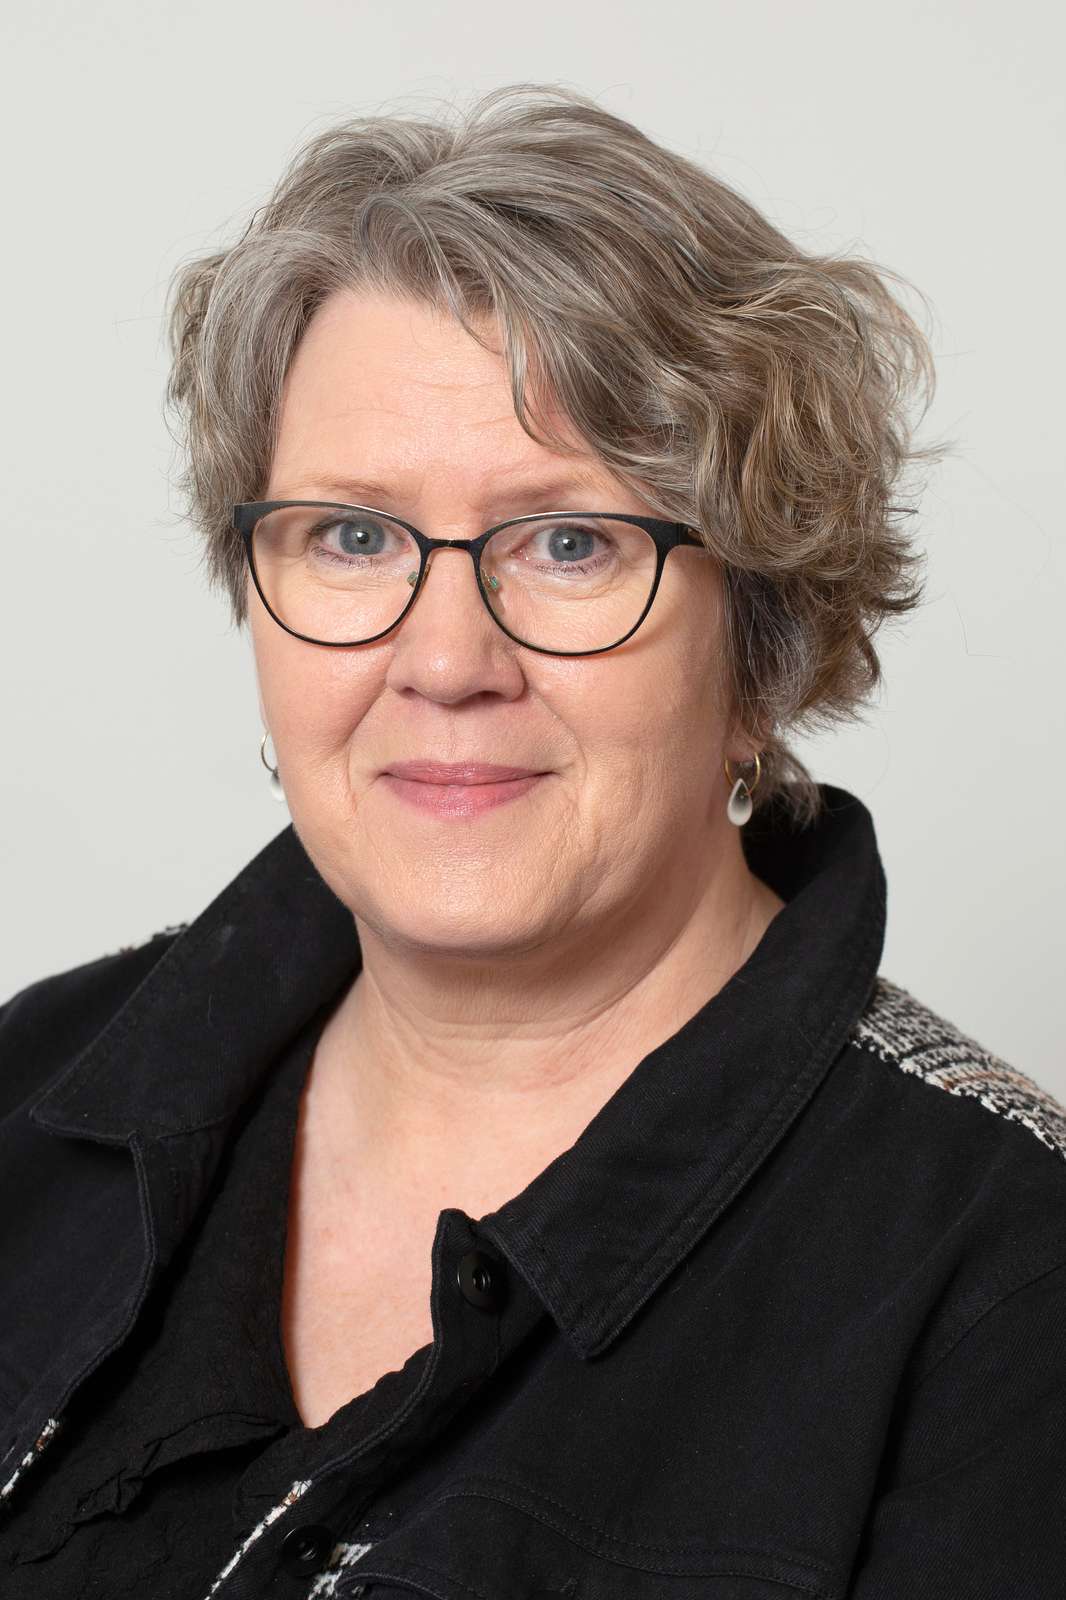 Tina Aagaard Bach